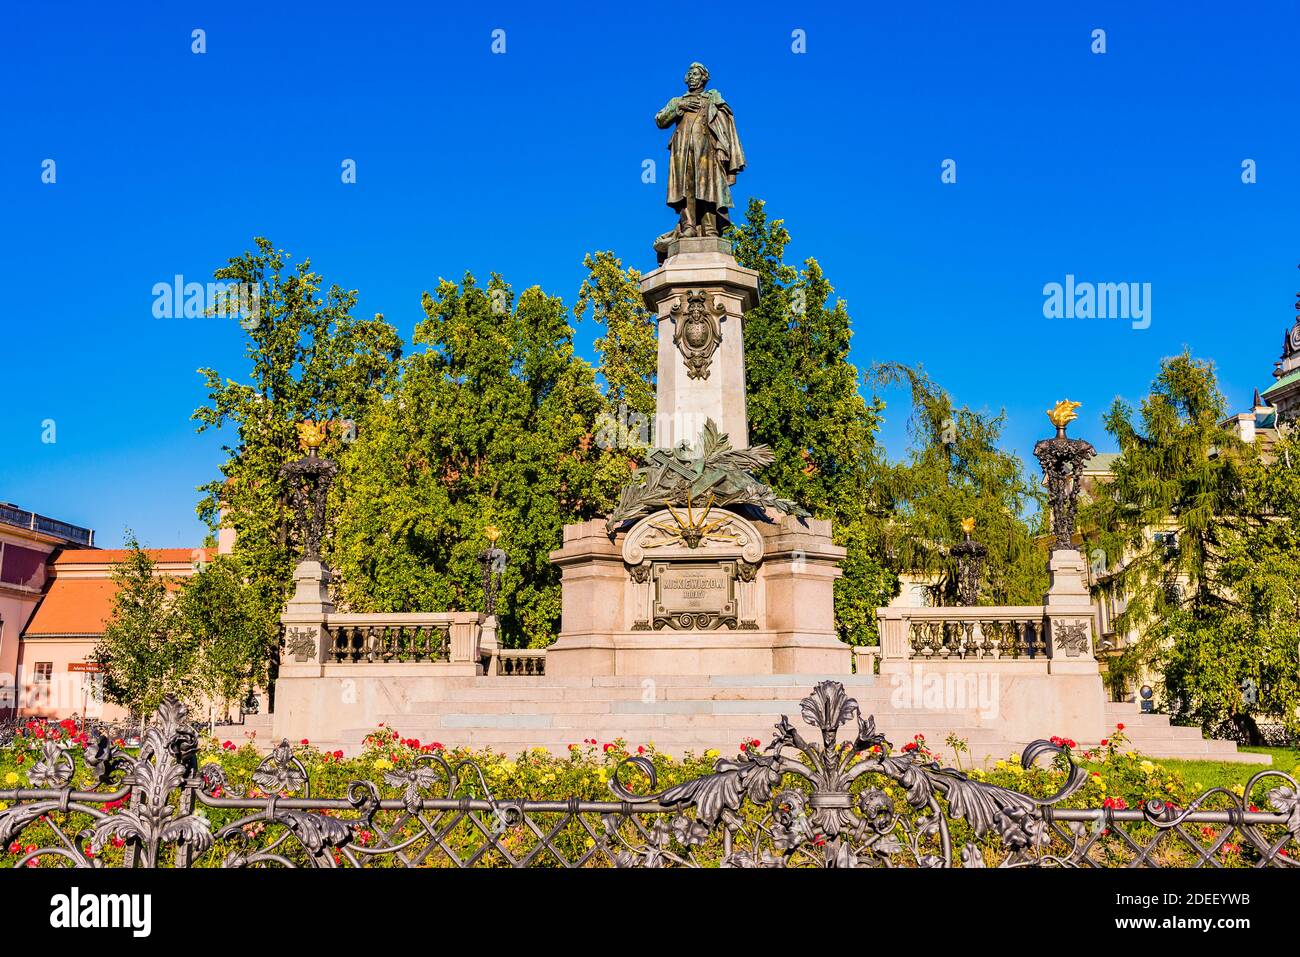 El monumento Adam Mickiewicz es un monumento dedicado a Adam Mickiewicz, poeta polaco. El monumento neoclásico fue construido en 1897–1898 por el escultor Foto de stock